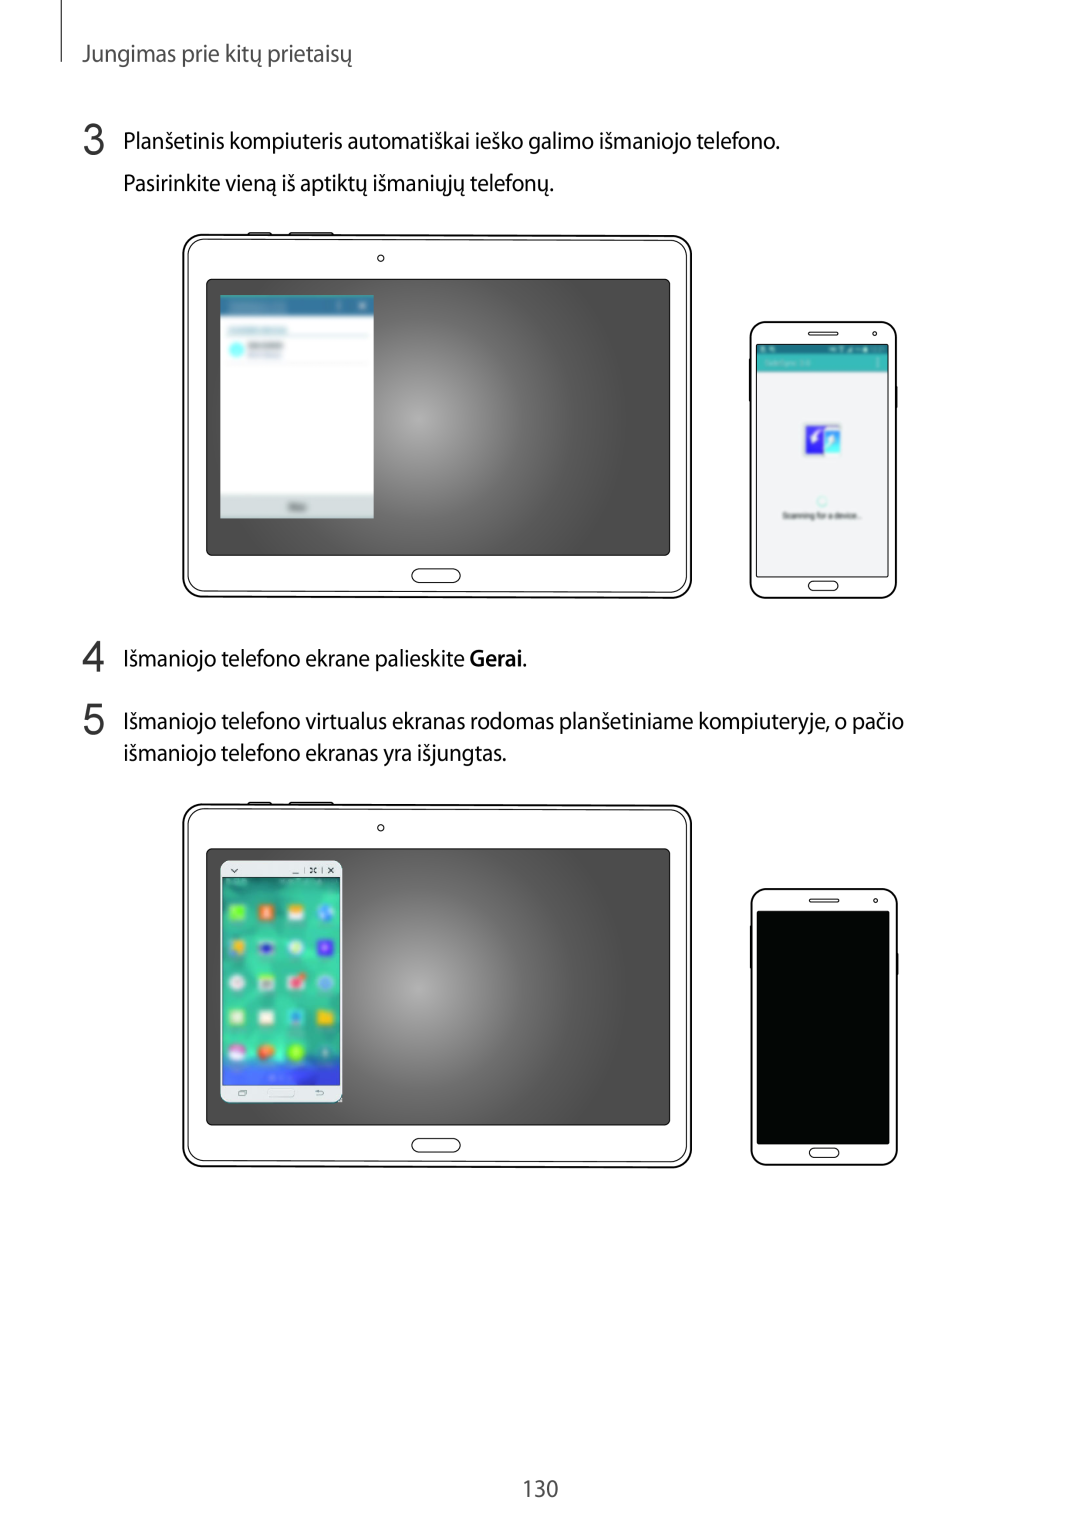 Samsung SM-T800NZWASEB, SM-T800NTSASEB manual Jungimas prie kitų prietaisų, Išmaniojo telefono ekrane palieskite Gerai 